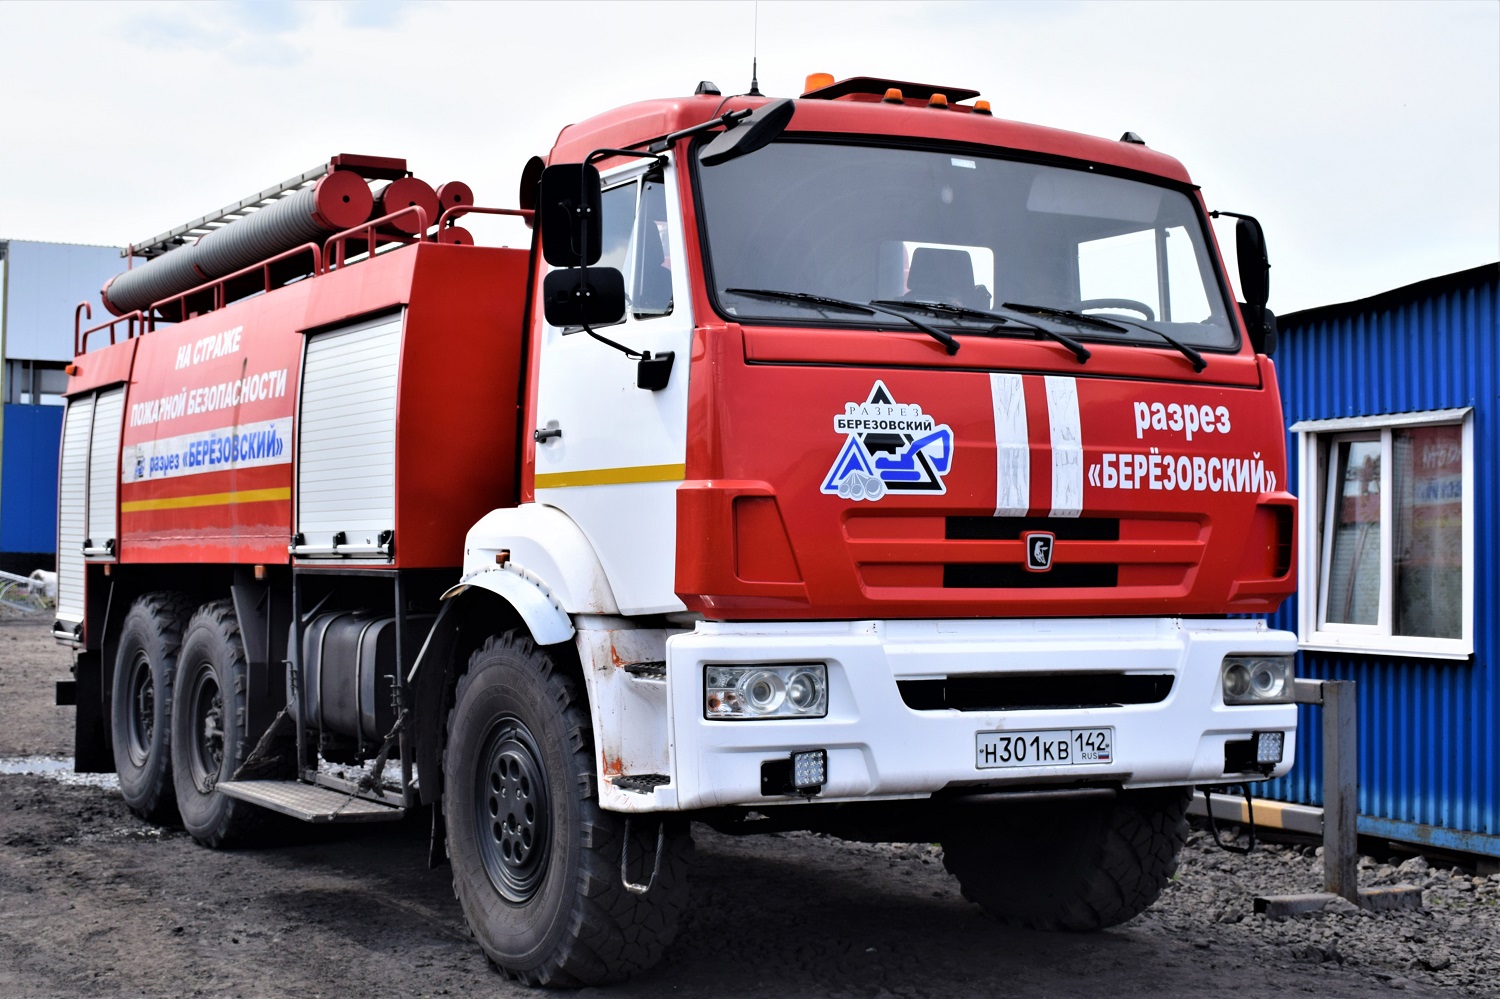 Разрез «Березовский» помогает обеспечивать пожарную безопасность в Новокузнецком и Прокопьевском районах